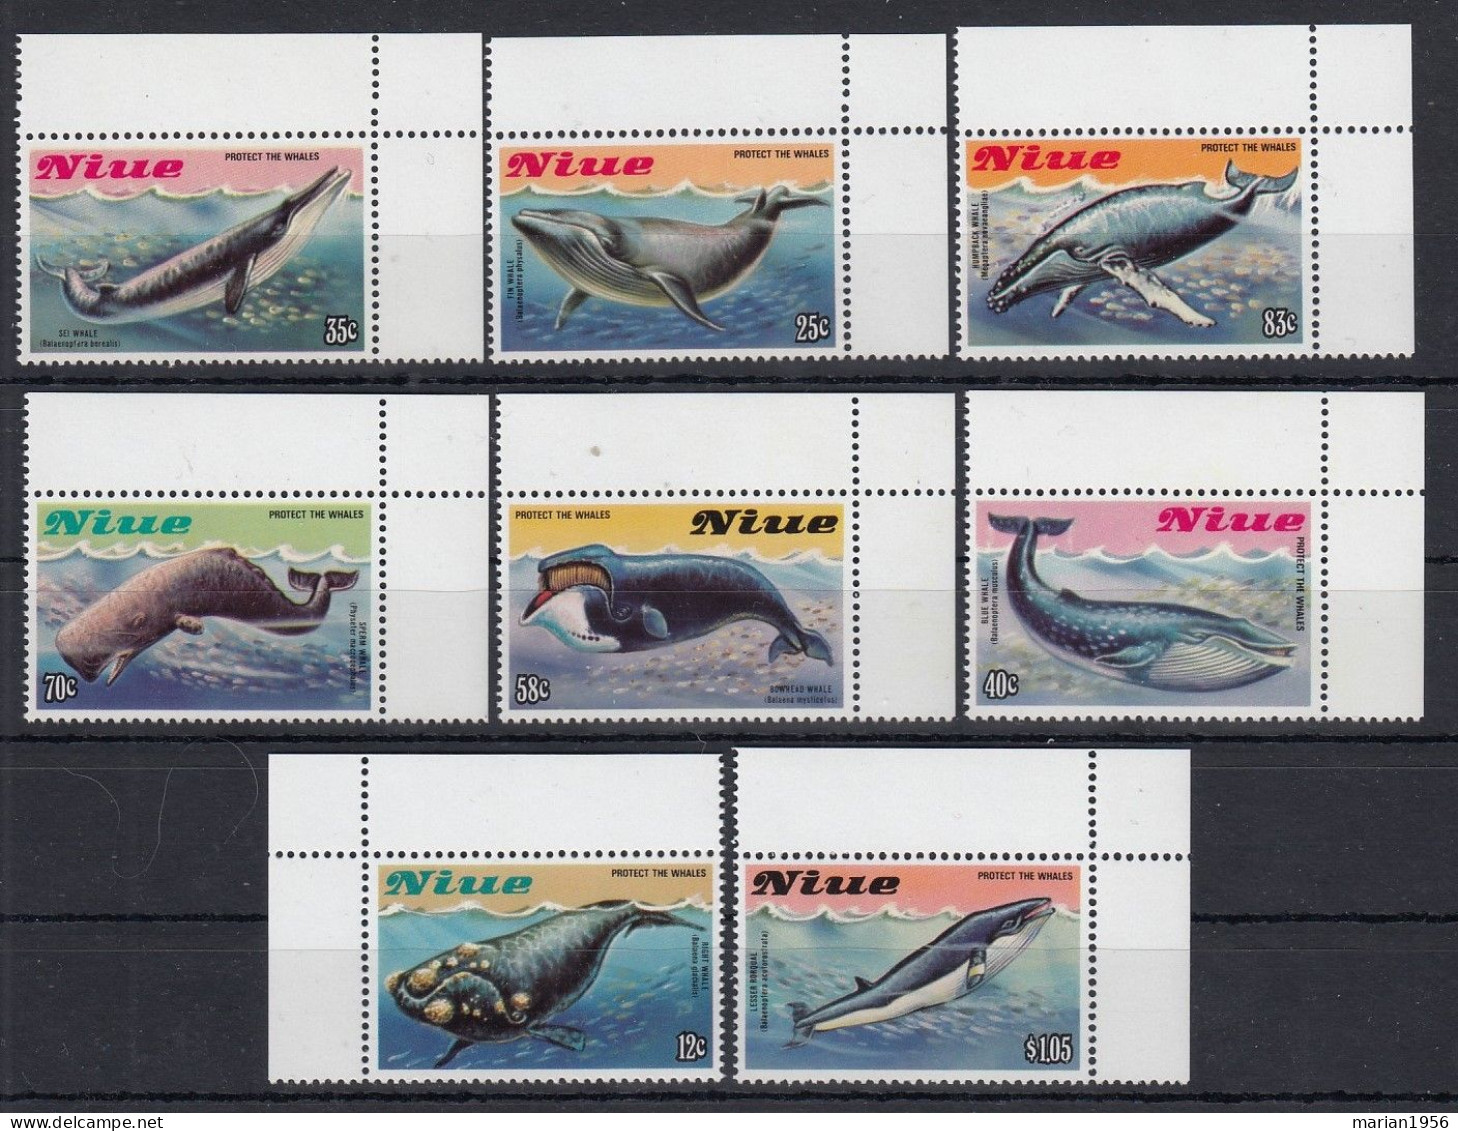 Niue 1983 - Vie Marine - BALEINES - Mich. 38 Eur. - MNH - Ballenas